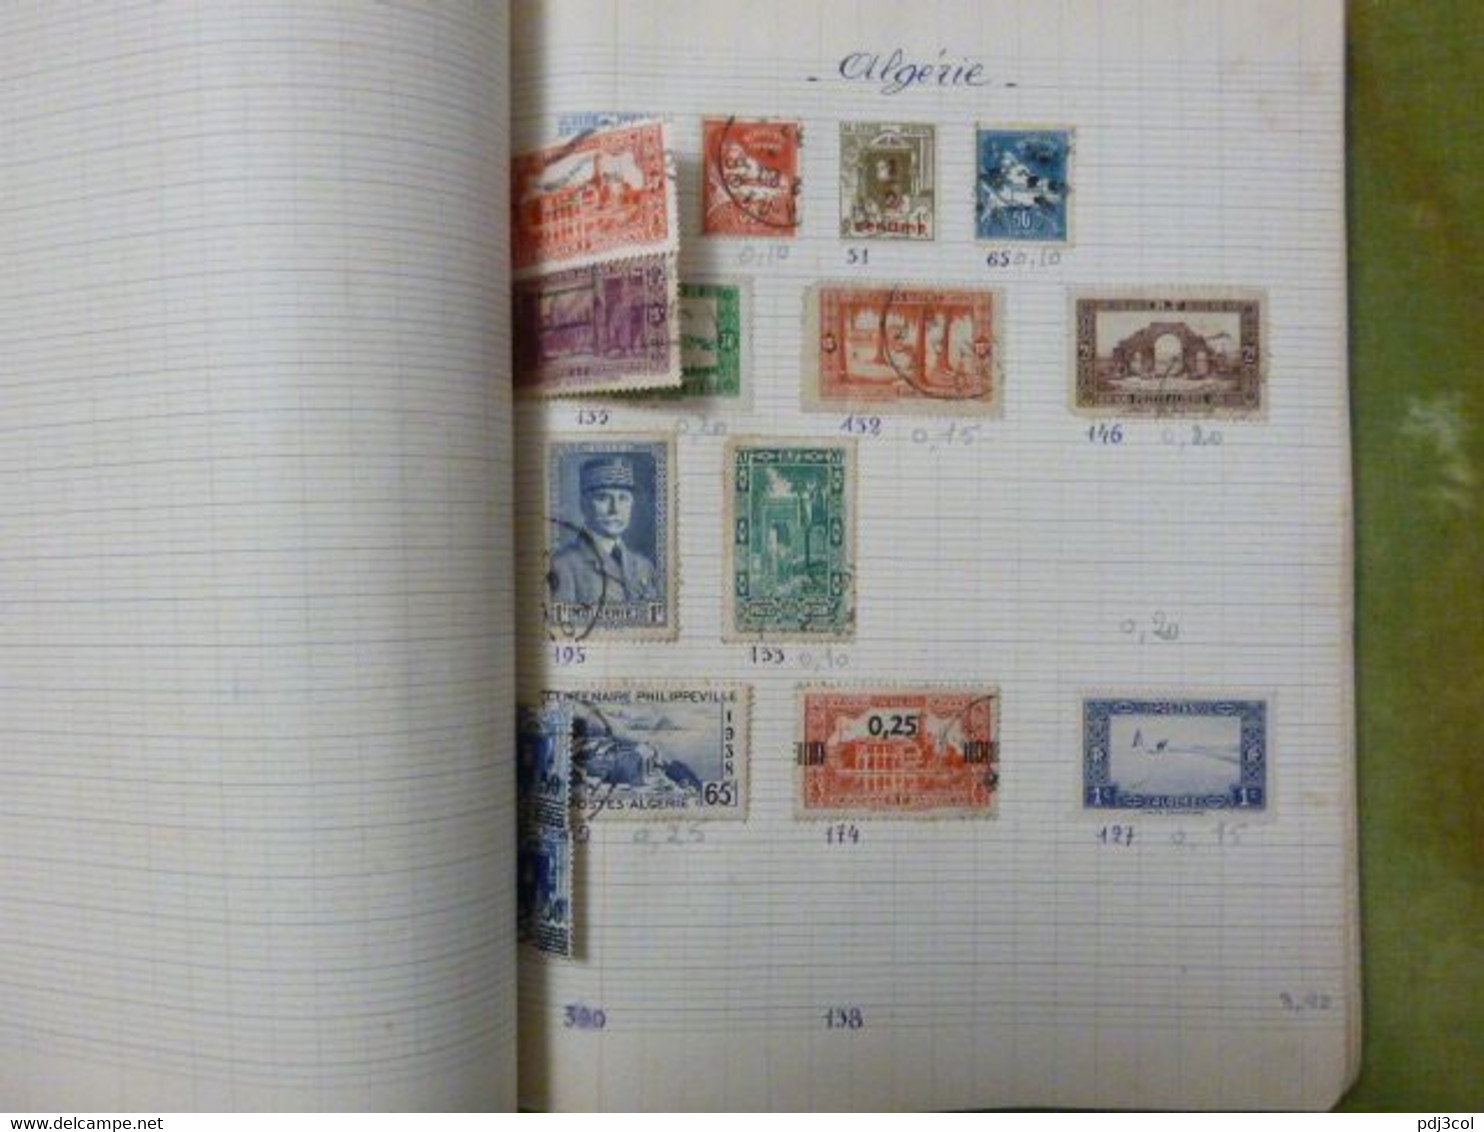 Cahier album de quelques centaines de timbres collés pays étrangers, monde, vers 1900